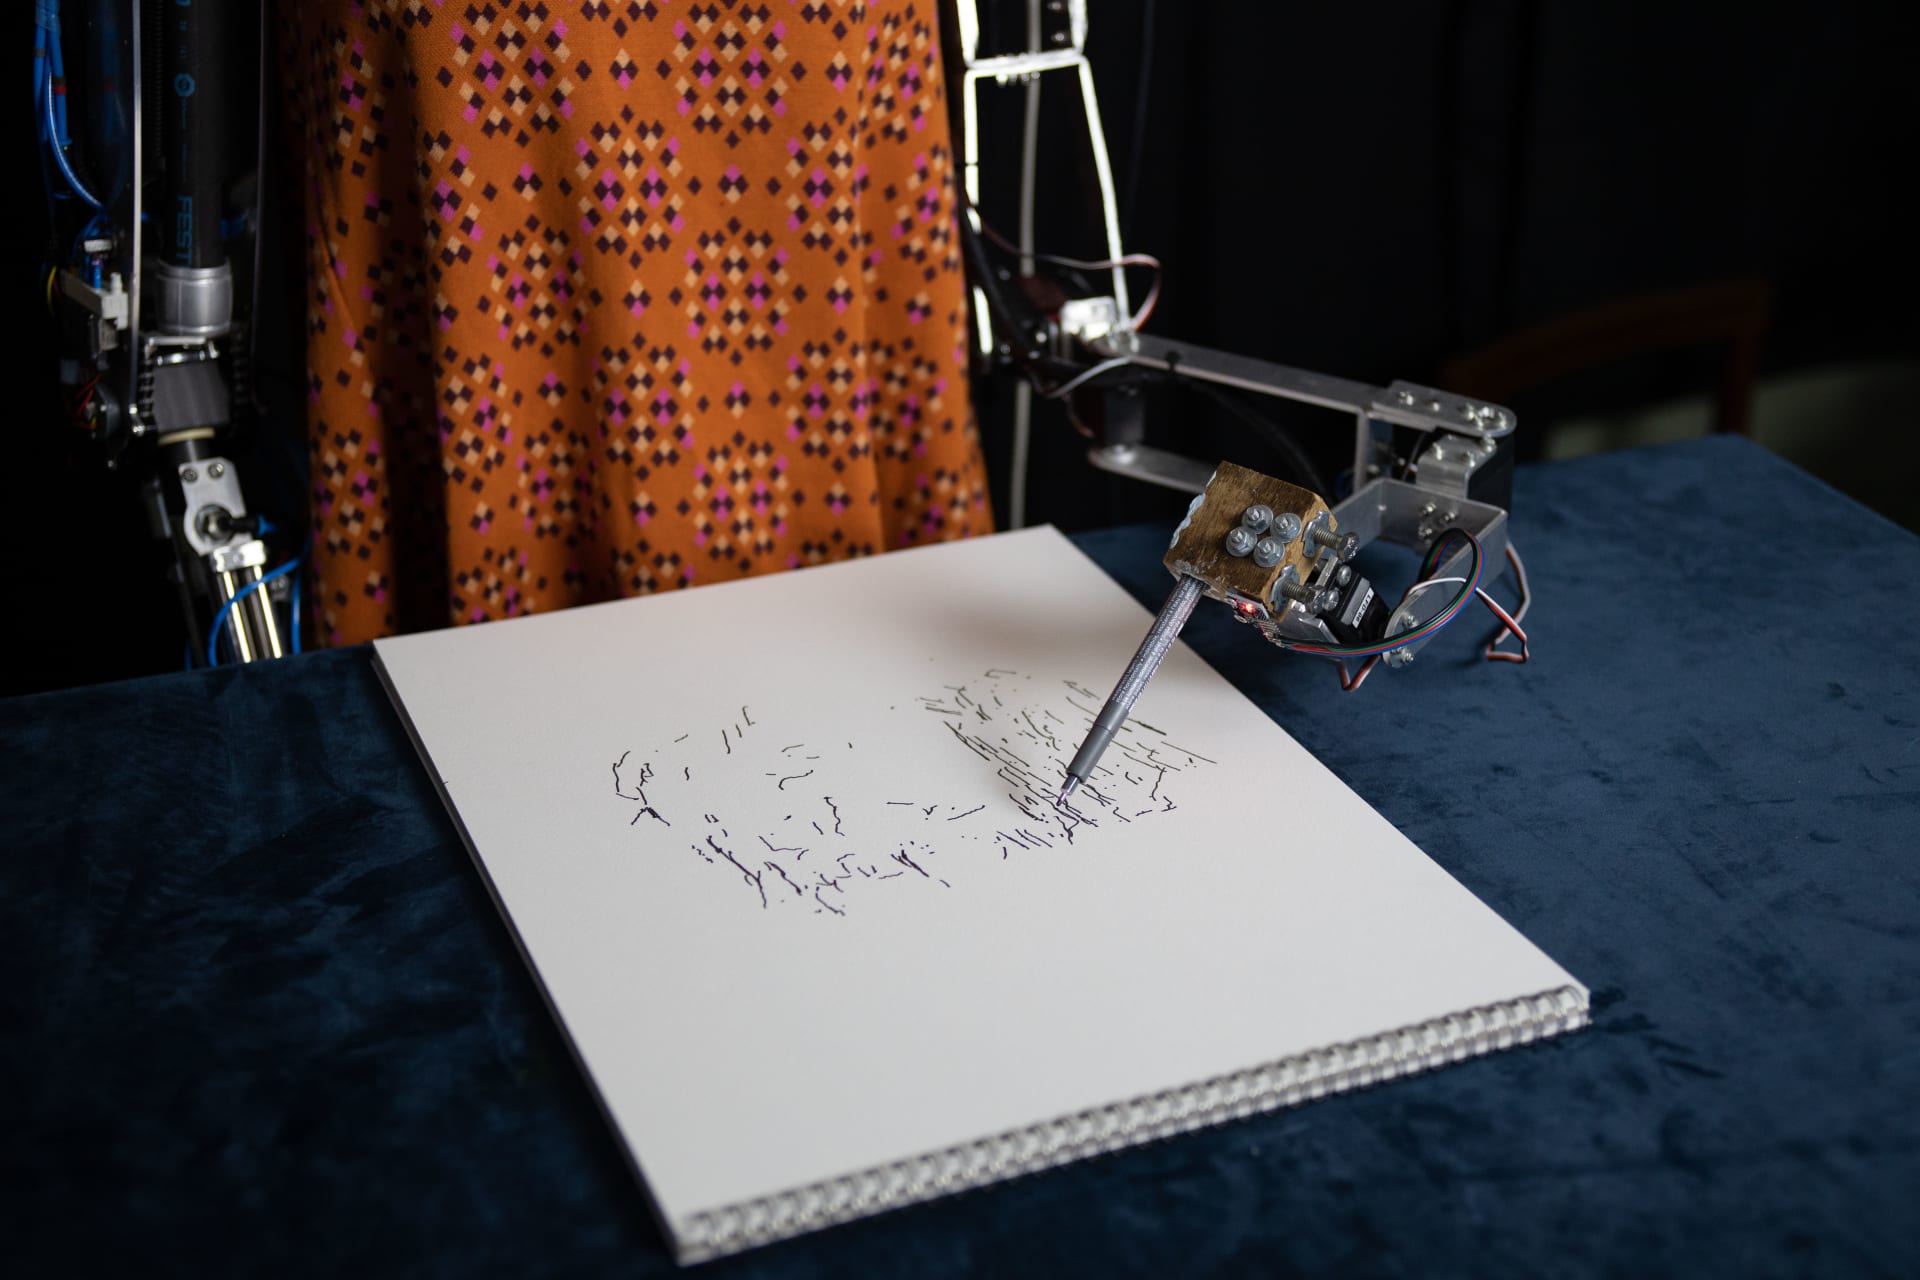 أول روبوت فنان على هيئة إنسان في العالم